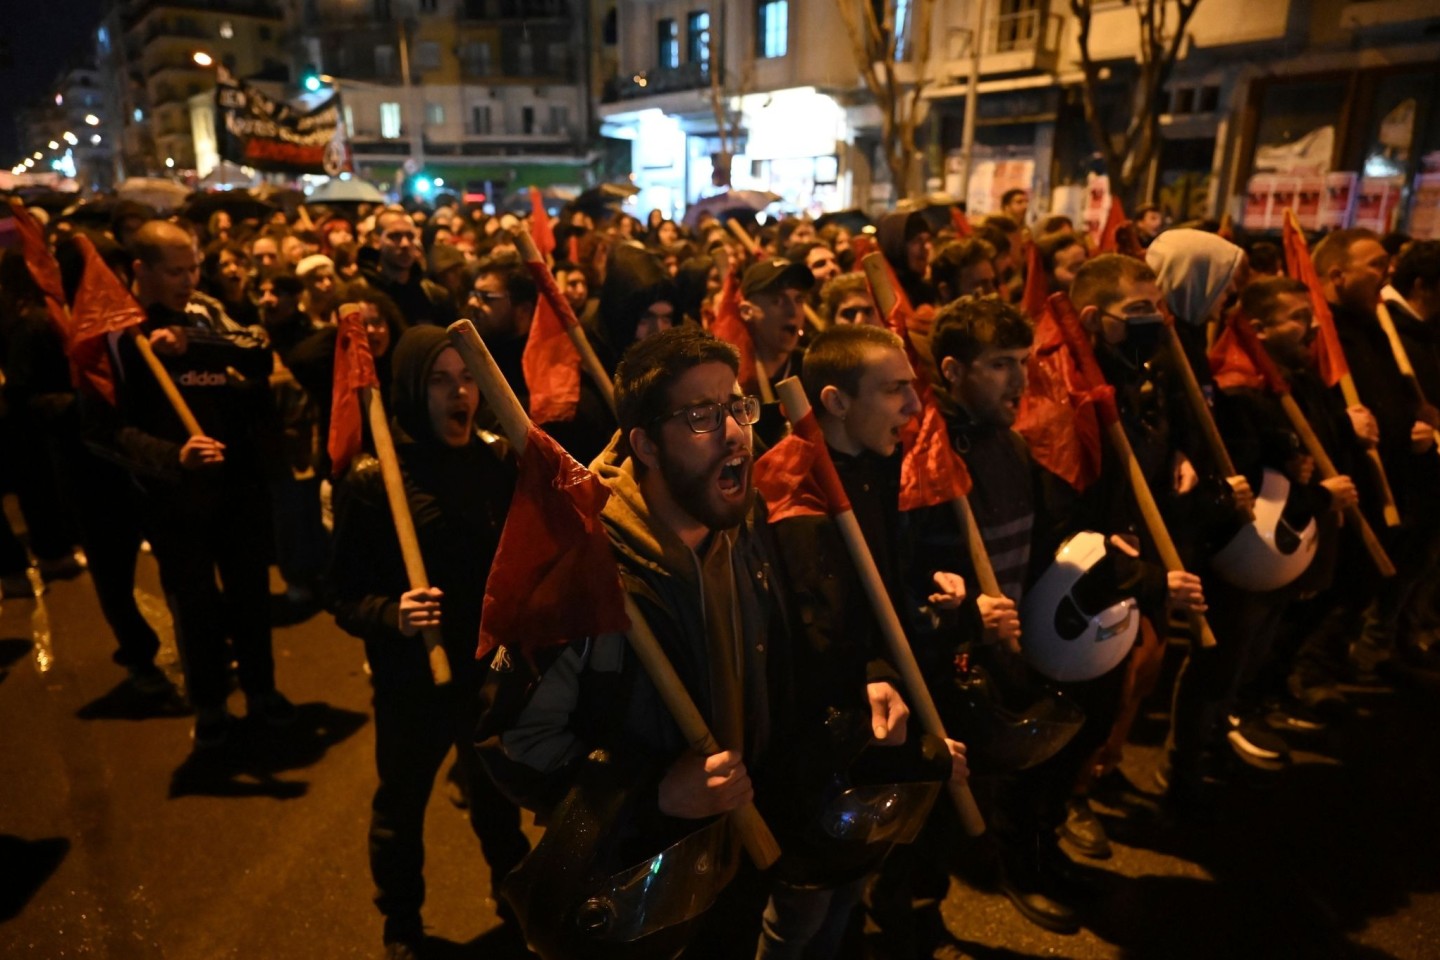 Menschen rufen während einer Demonstration Parolen. Trauer und Entsetzen herrschen in Griechenland nach dem schweren Zugunglück mit mehreren Toten und Verletzten.